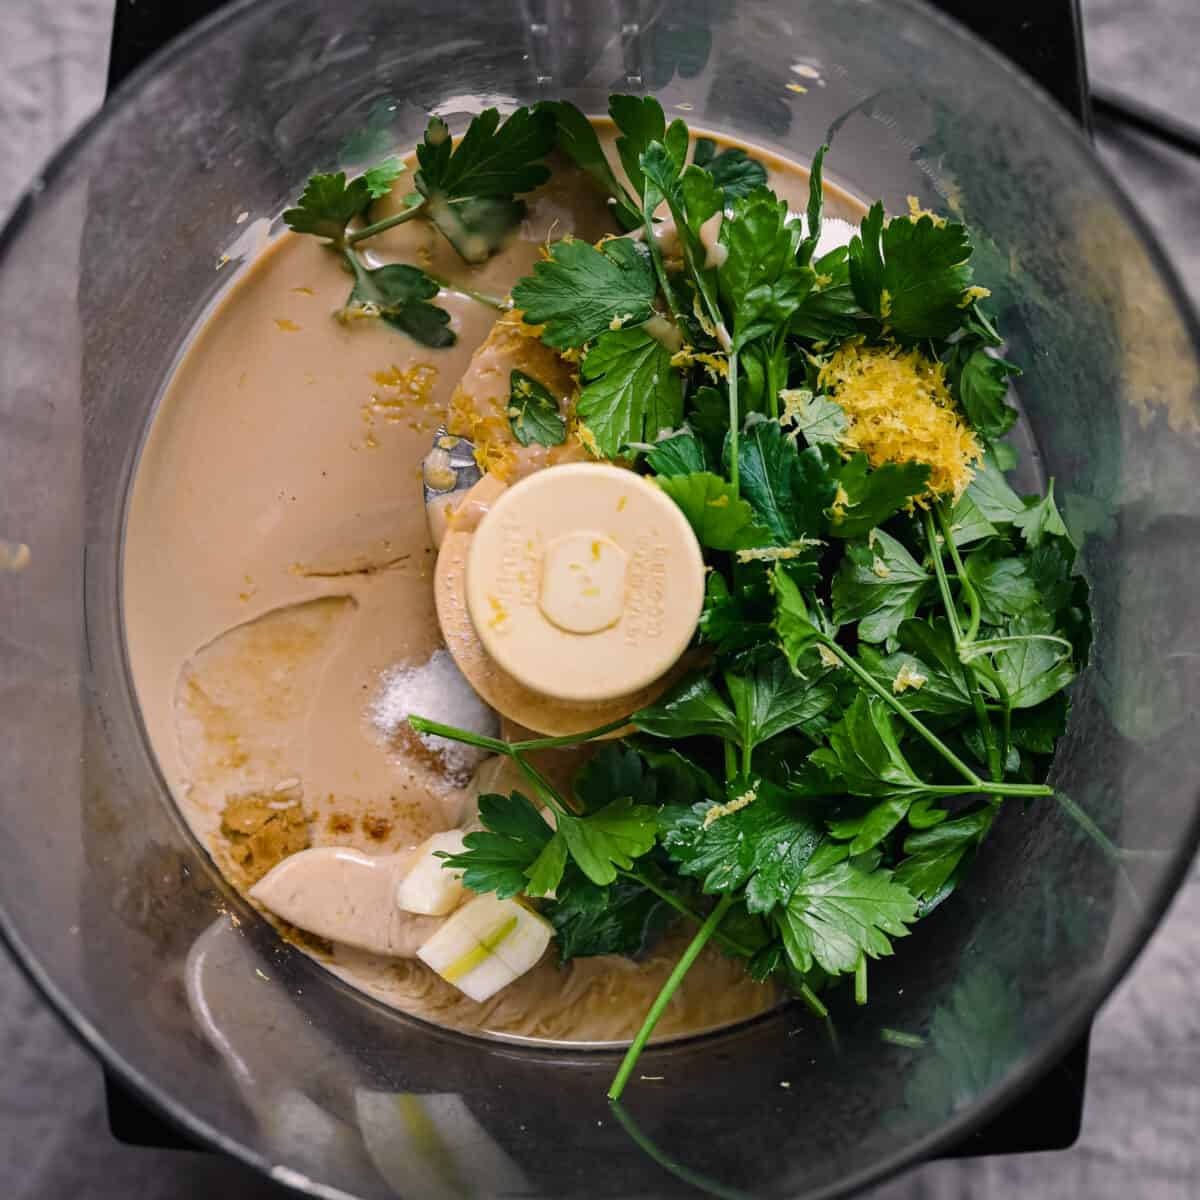 tahini, parsley, and lemon in food processor for tahini sauce